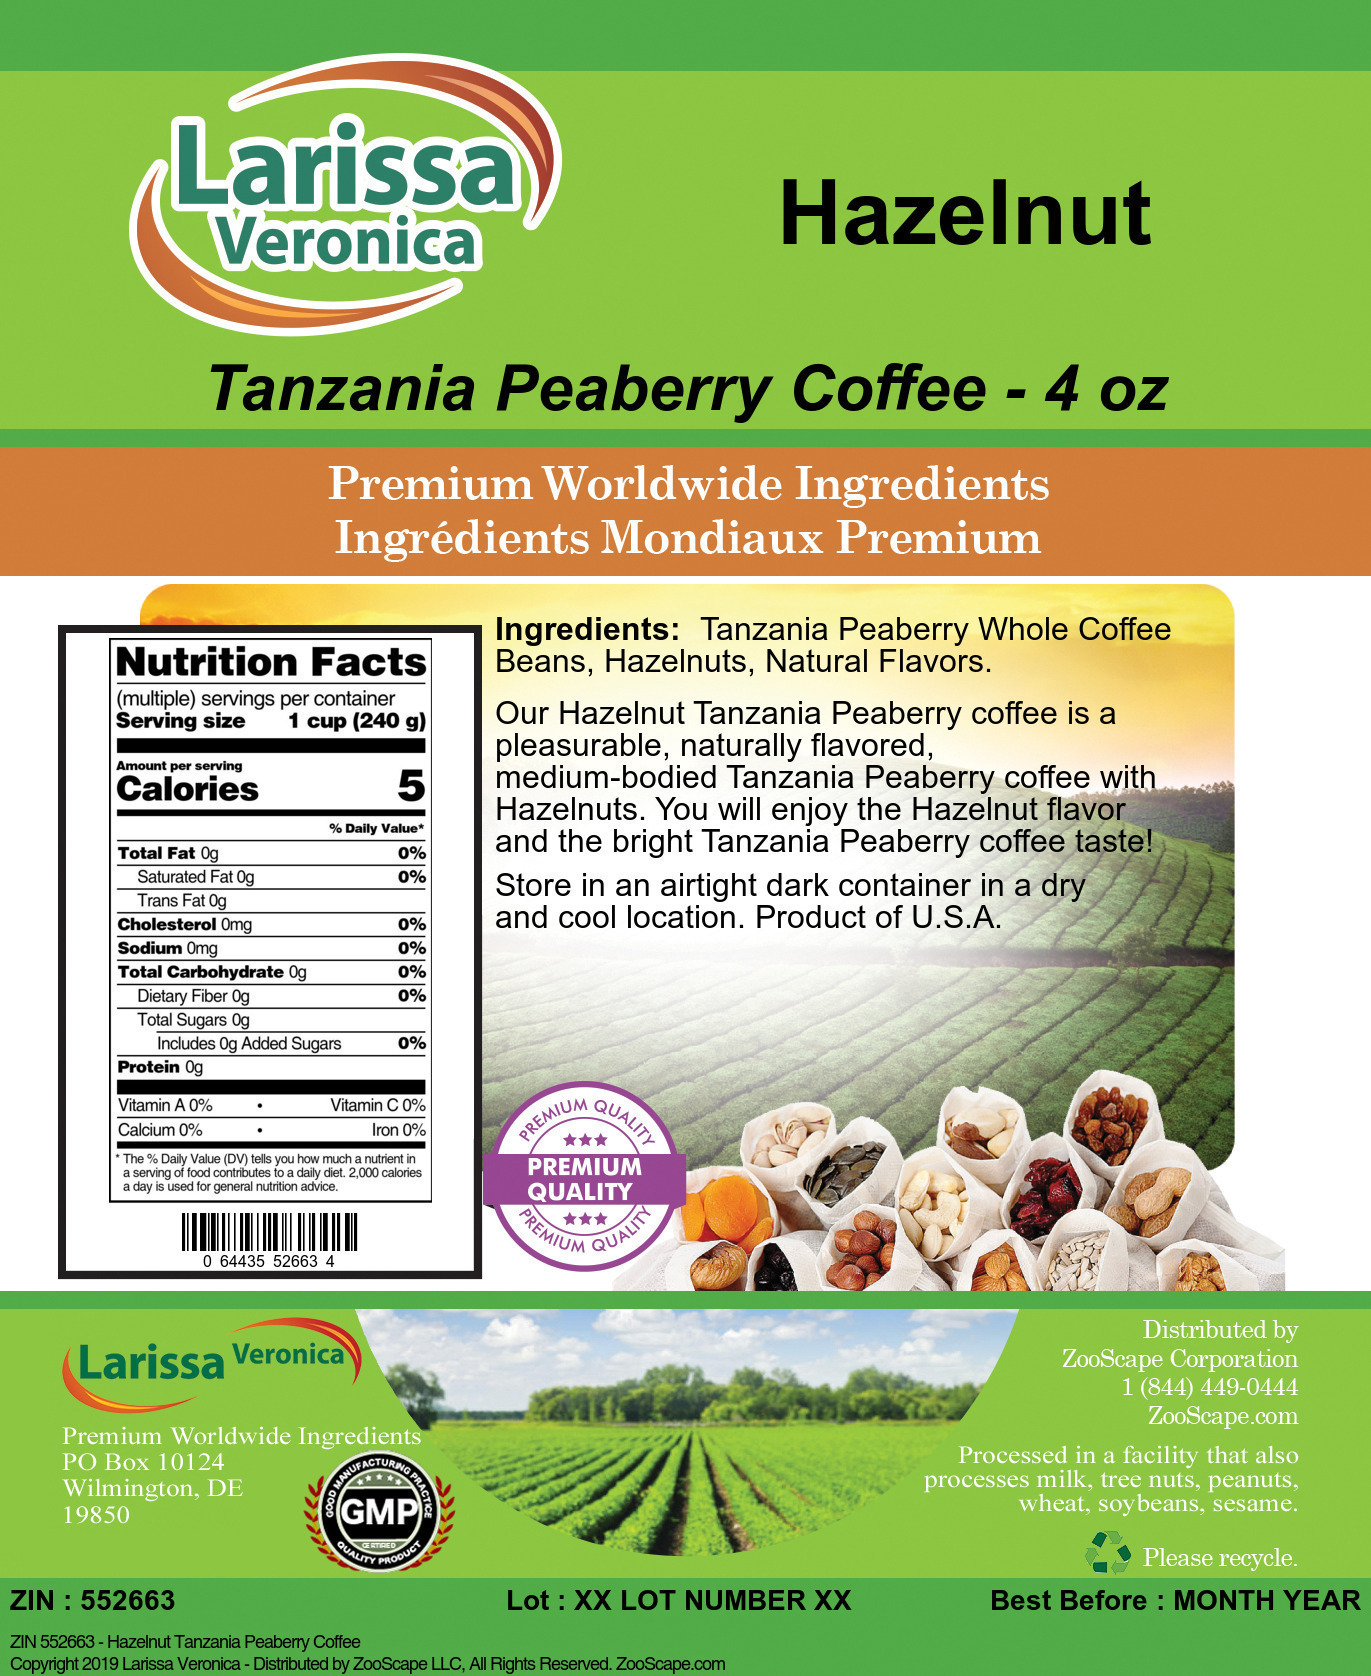 Hazelnut Tanzania Peaberry Coffee - Label